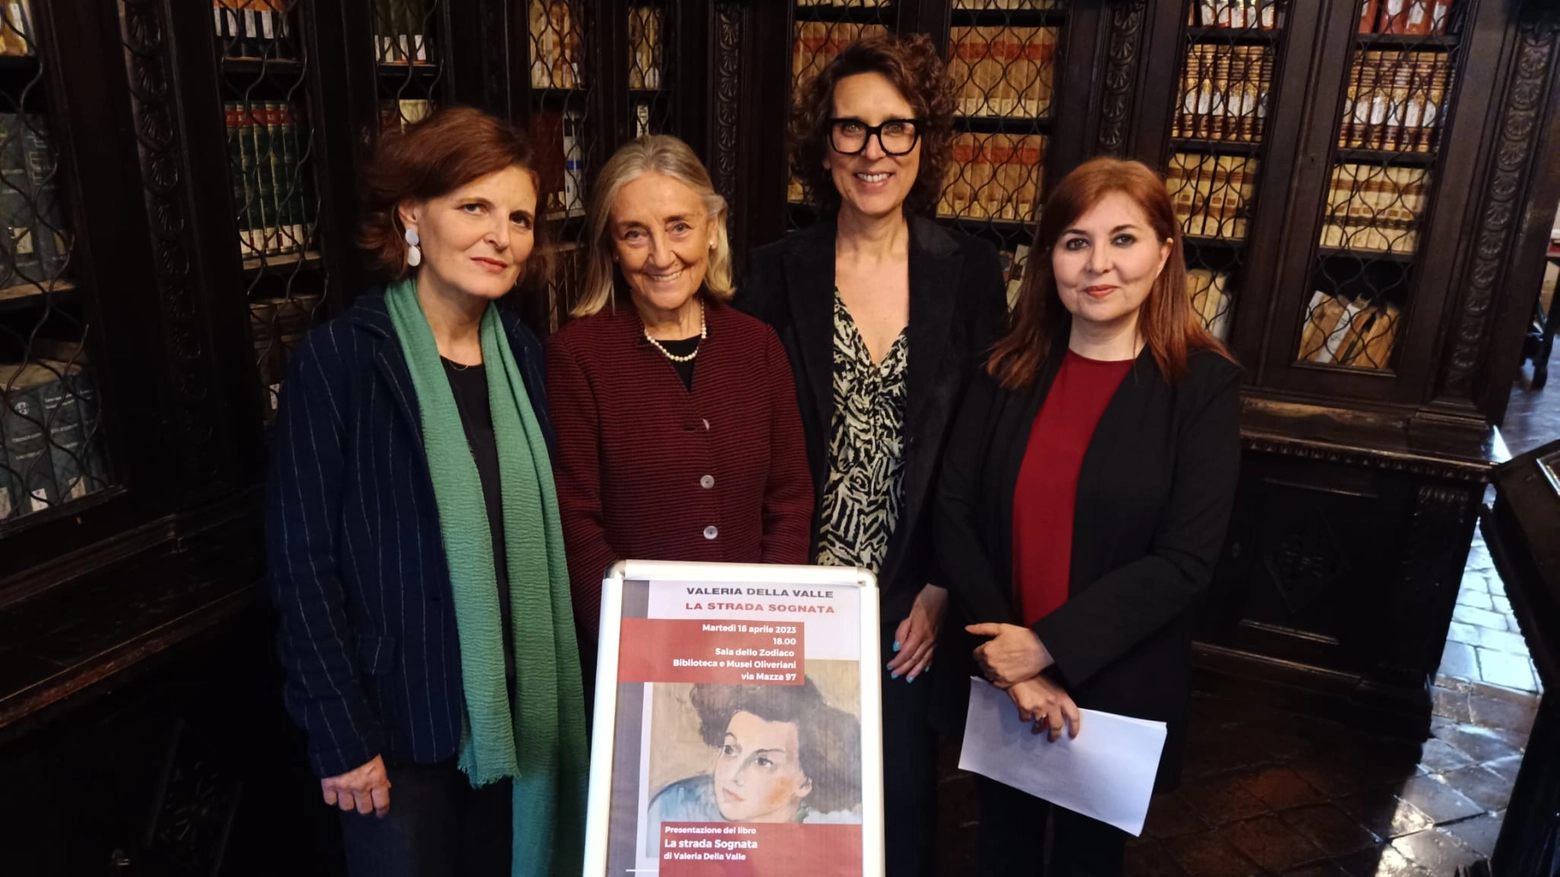 Chiara Agostinelli, Valeria Della Valle, Brunella Paolini, Lucia Ferrati